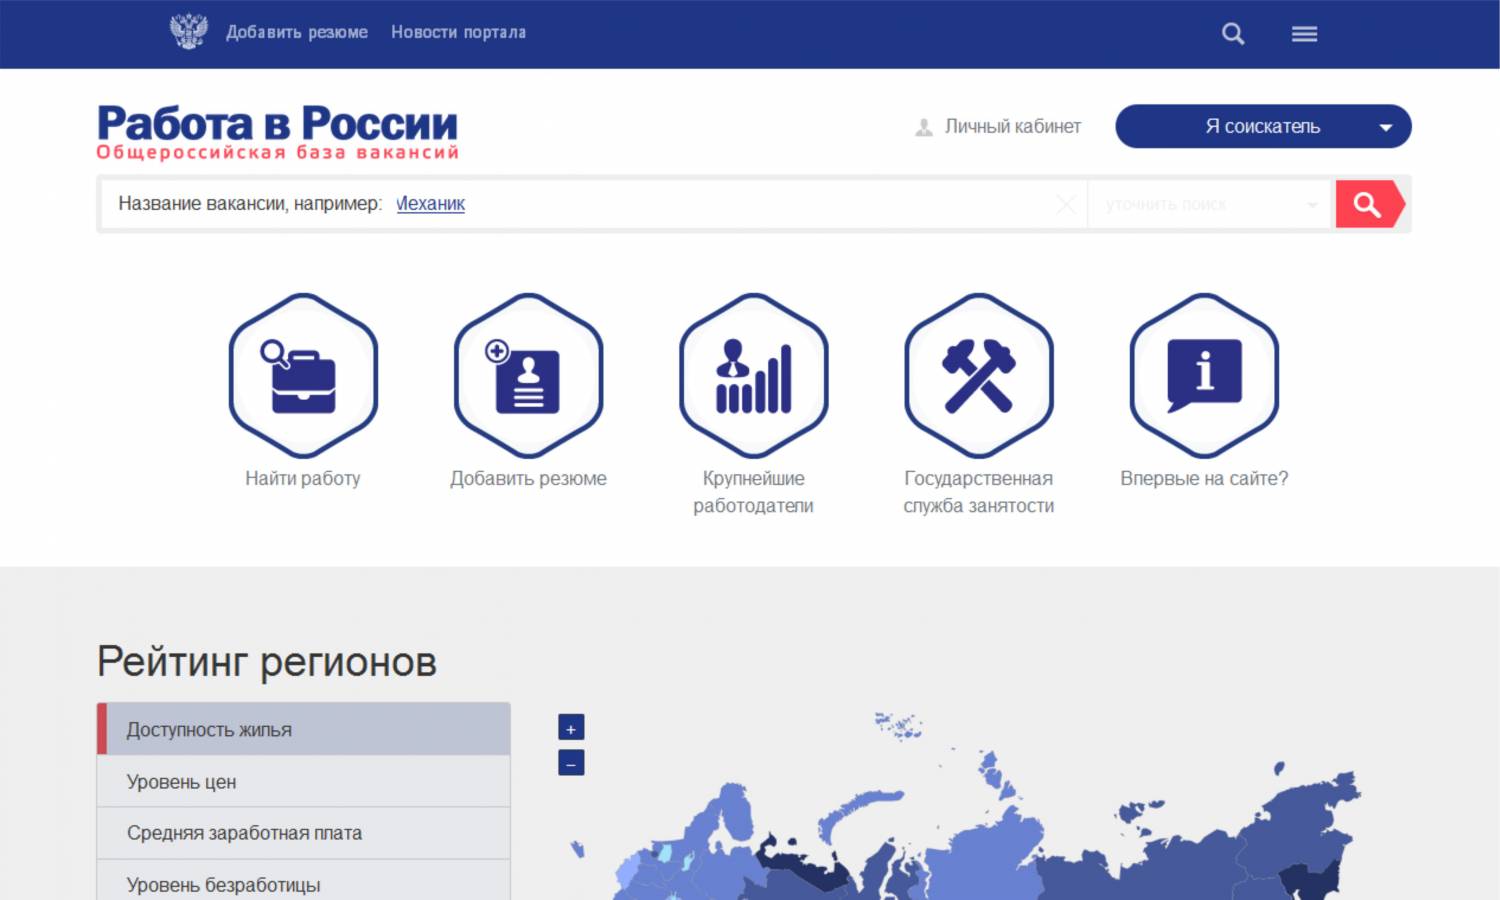 Портал «Работа в России» - найдите работу прямо сейчас!